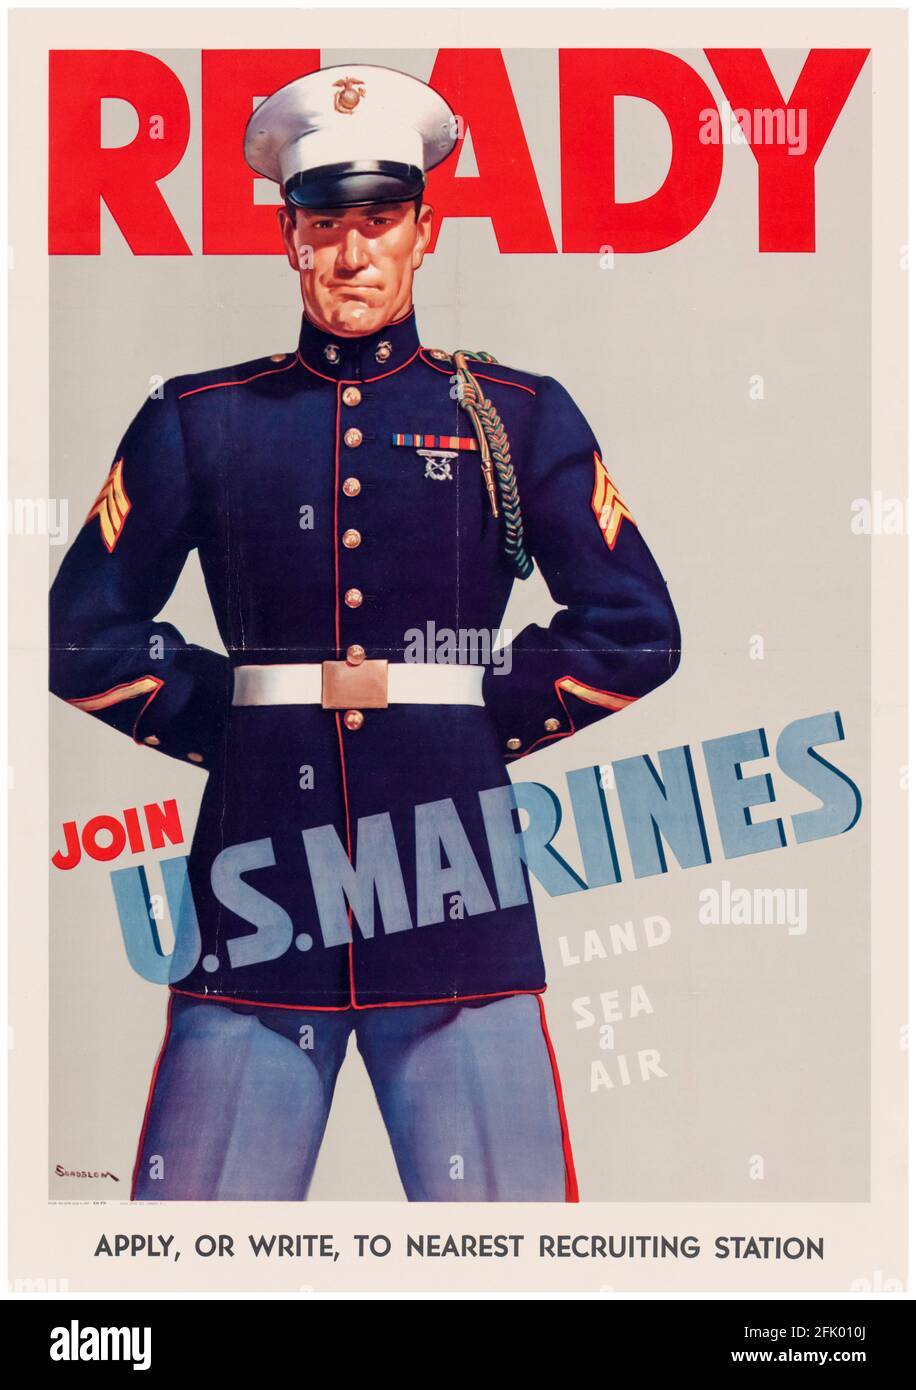 American, affiche de recrutement militaire de la Seconde Guerre mondiale, Ready, Rejoignez-nous Marines, (USMC), 1942-1945 Banque D'Images